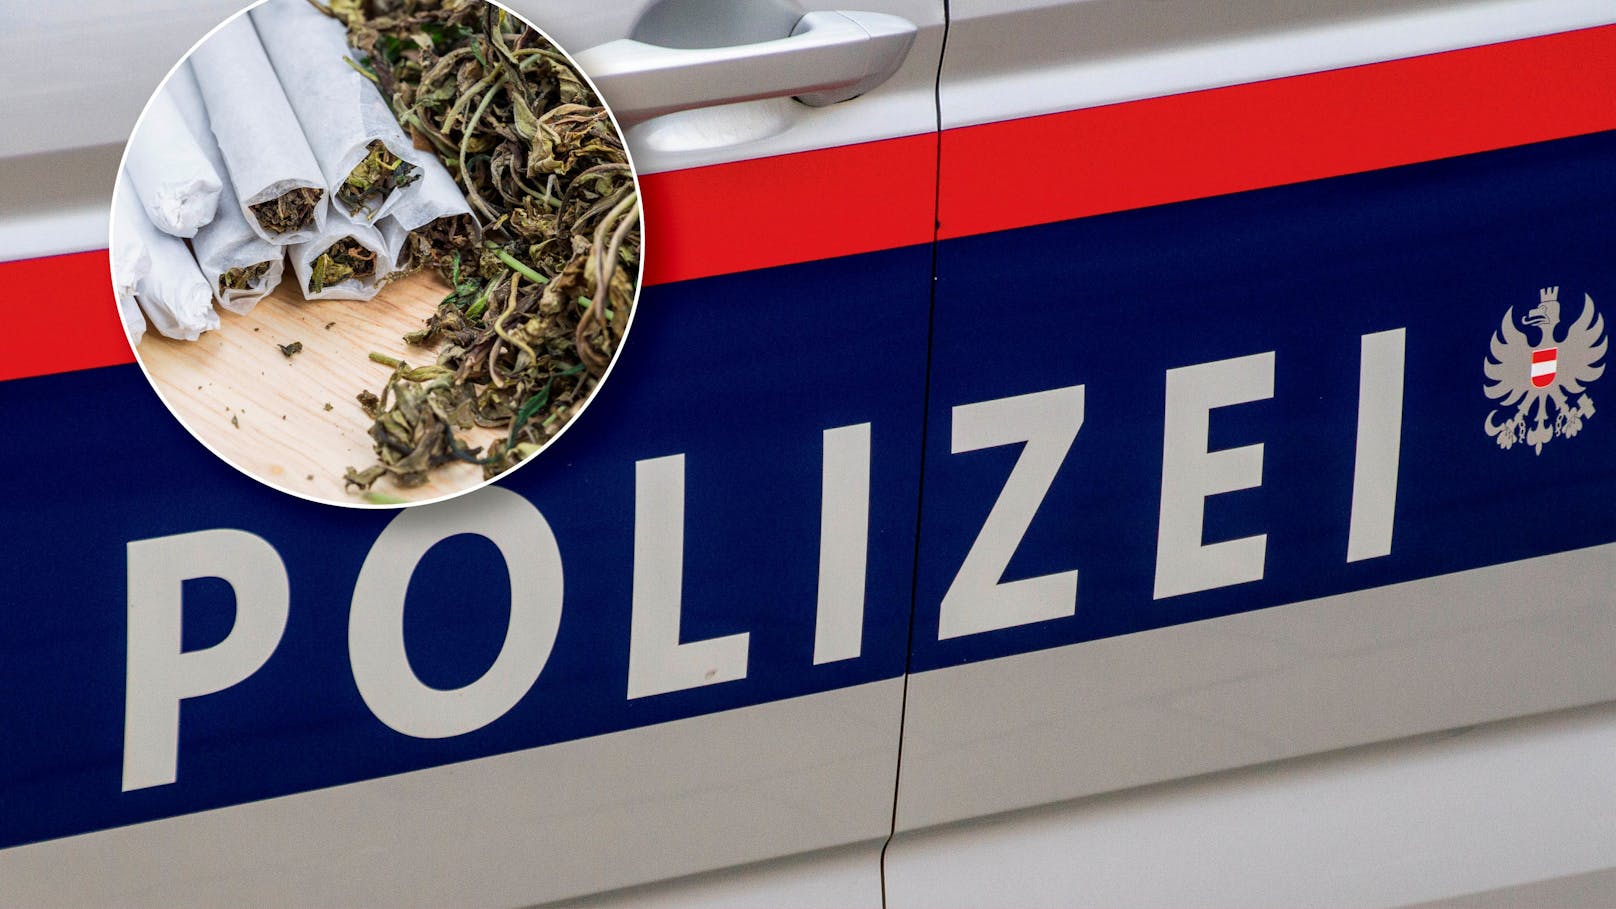 Mann versteckt Joints in Schuh – von Polizei geschnappt